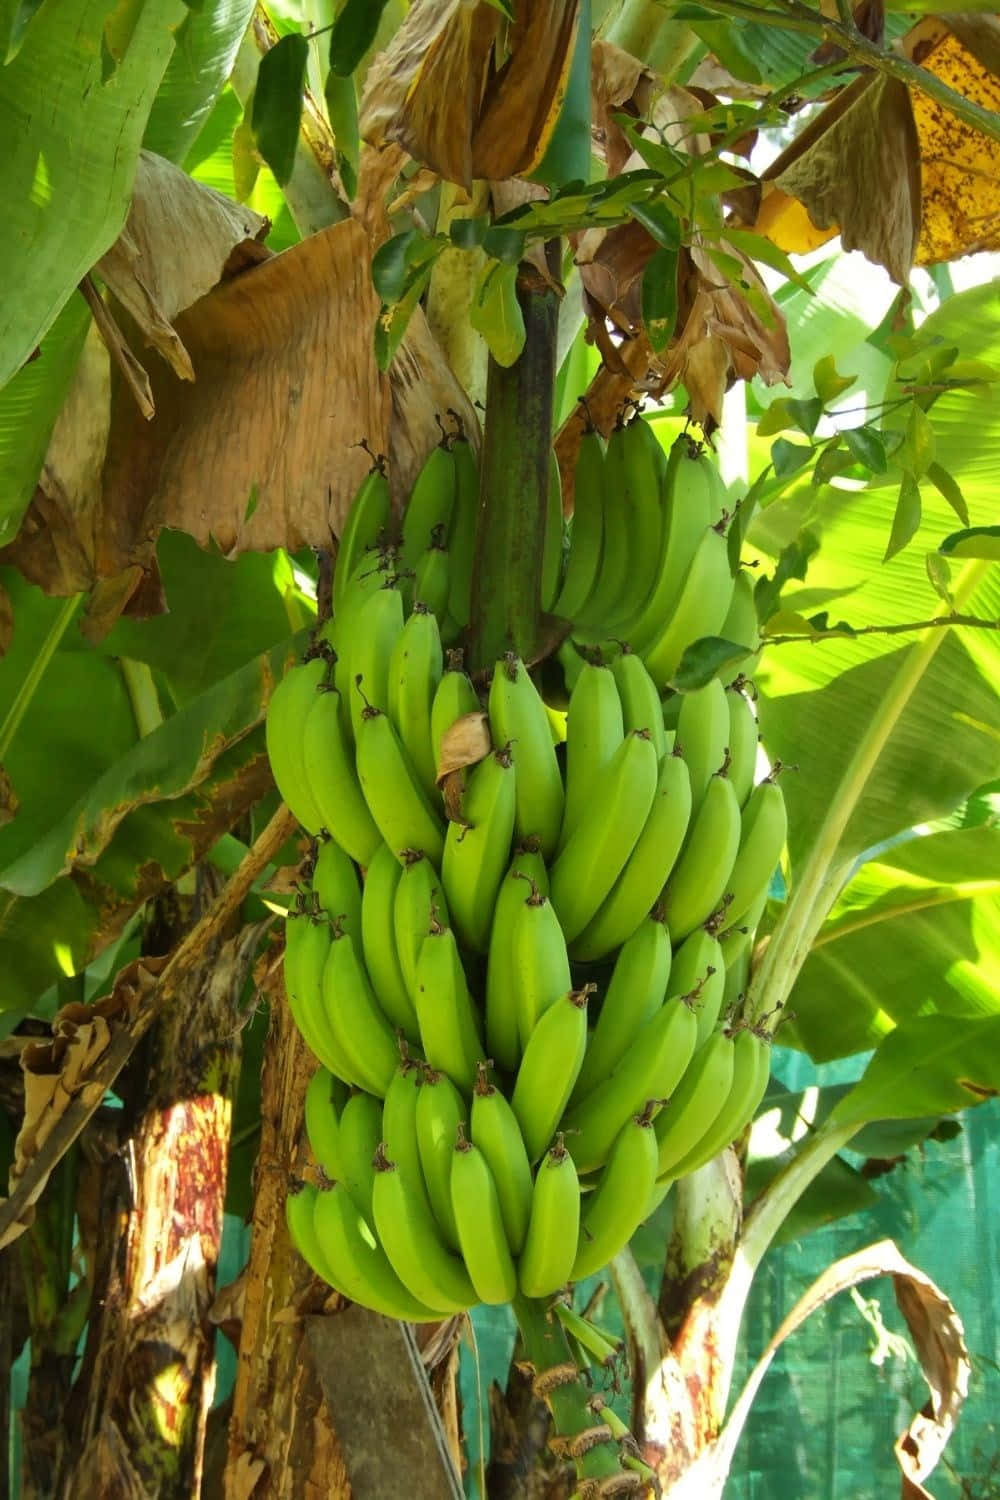 A Freshly Harvested Banana Tree